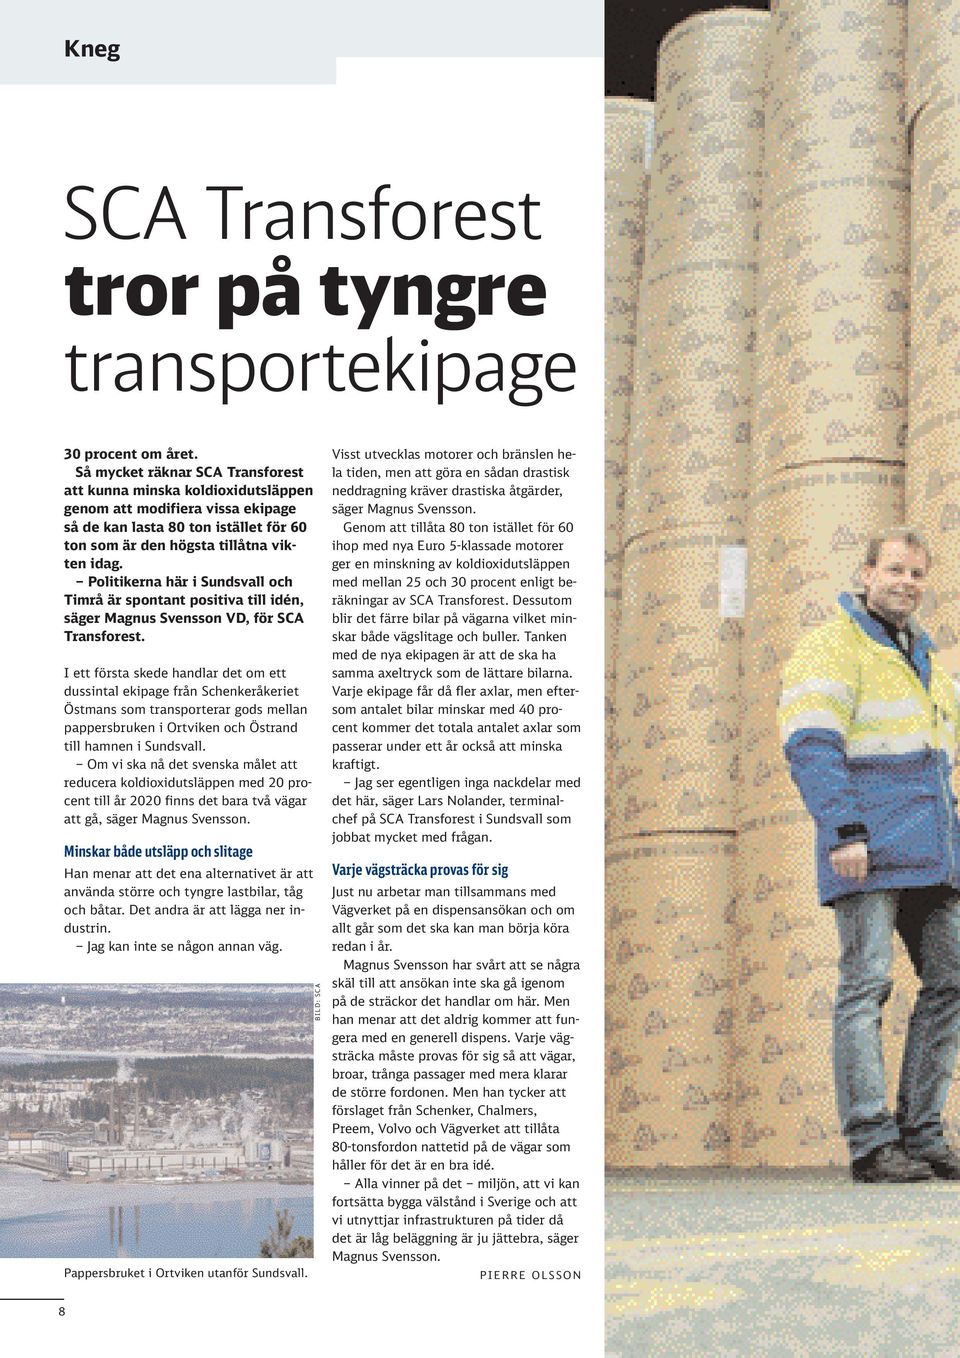 Politikerna här i Sundsvall och Timrå är spontant positiva till idén, säger Magnus Svensson VD, för SCA Transforest.